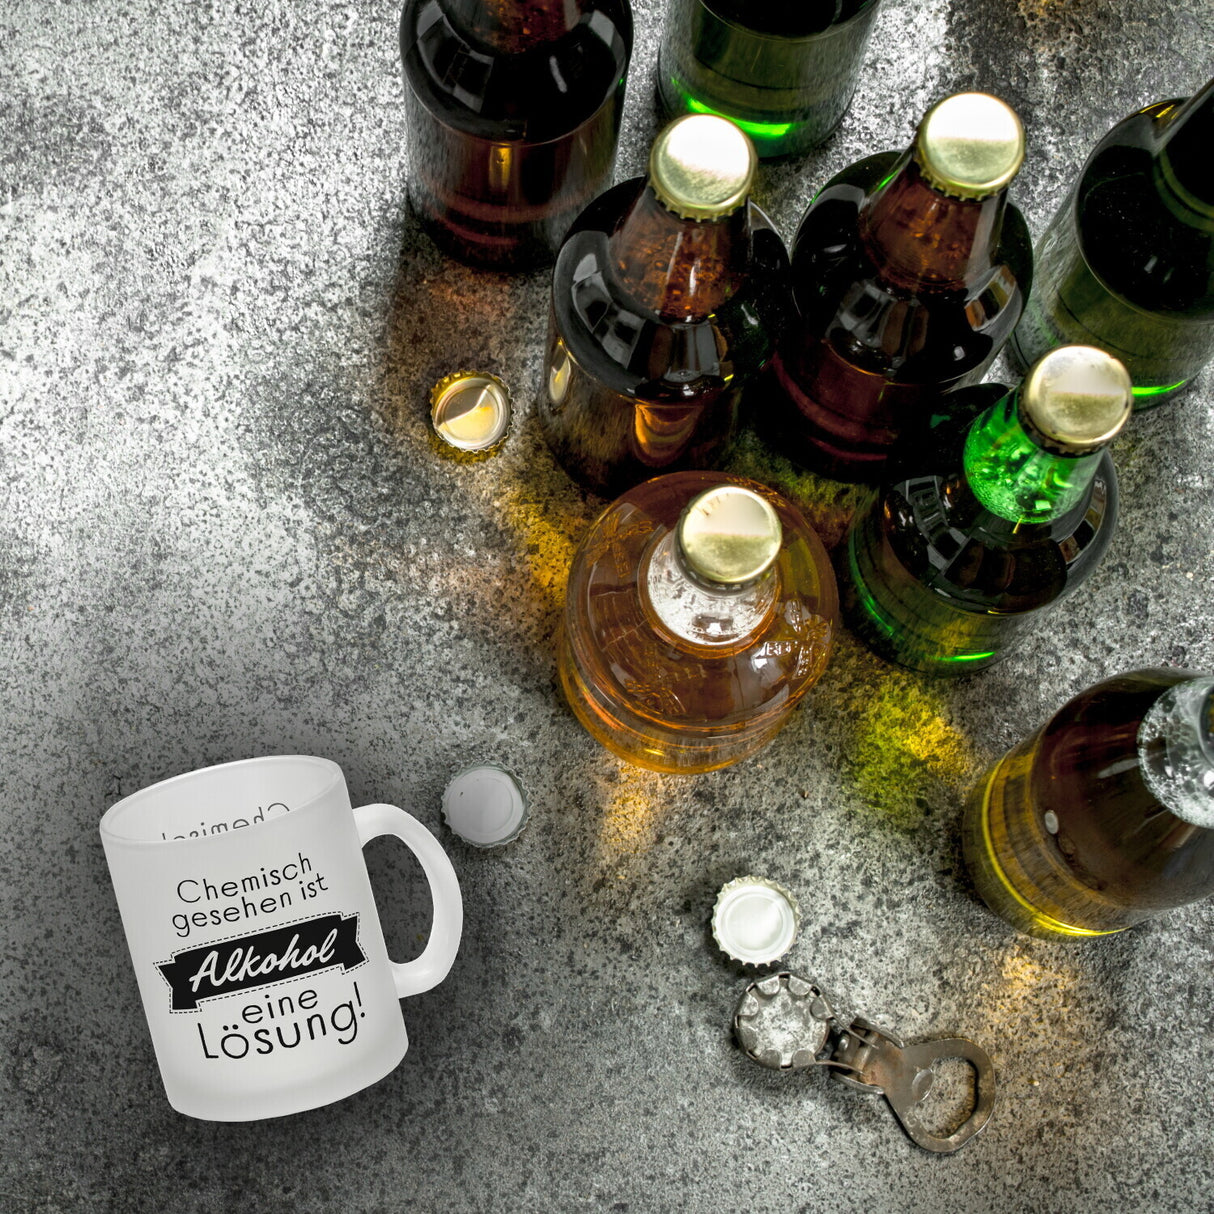 Chemisch gesehen ist Alkohol eine Lösung Kaffeebecher